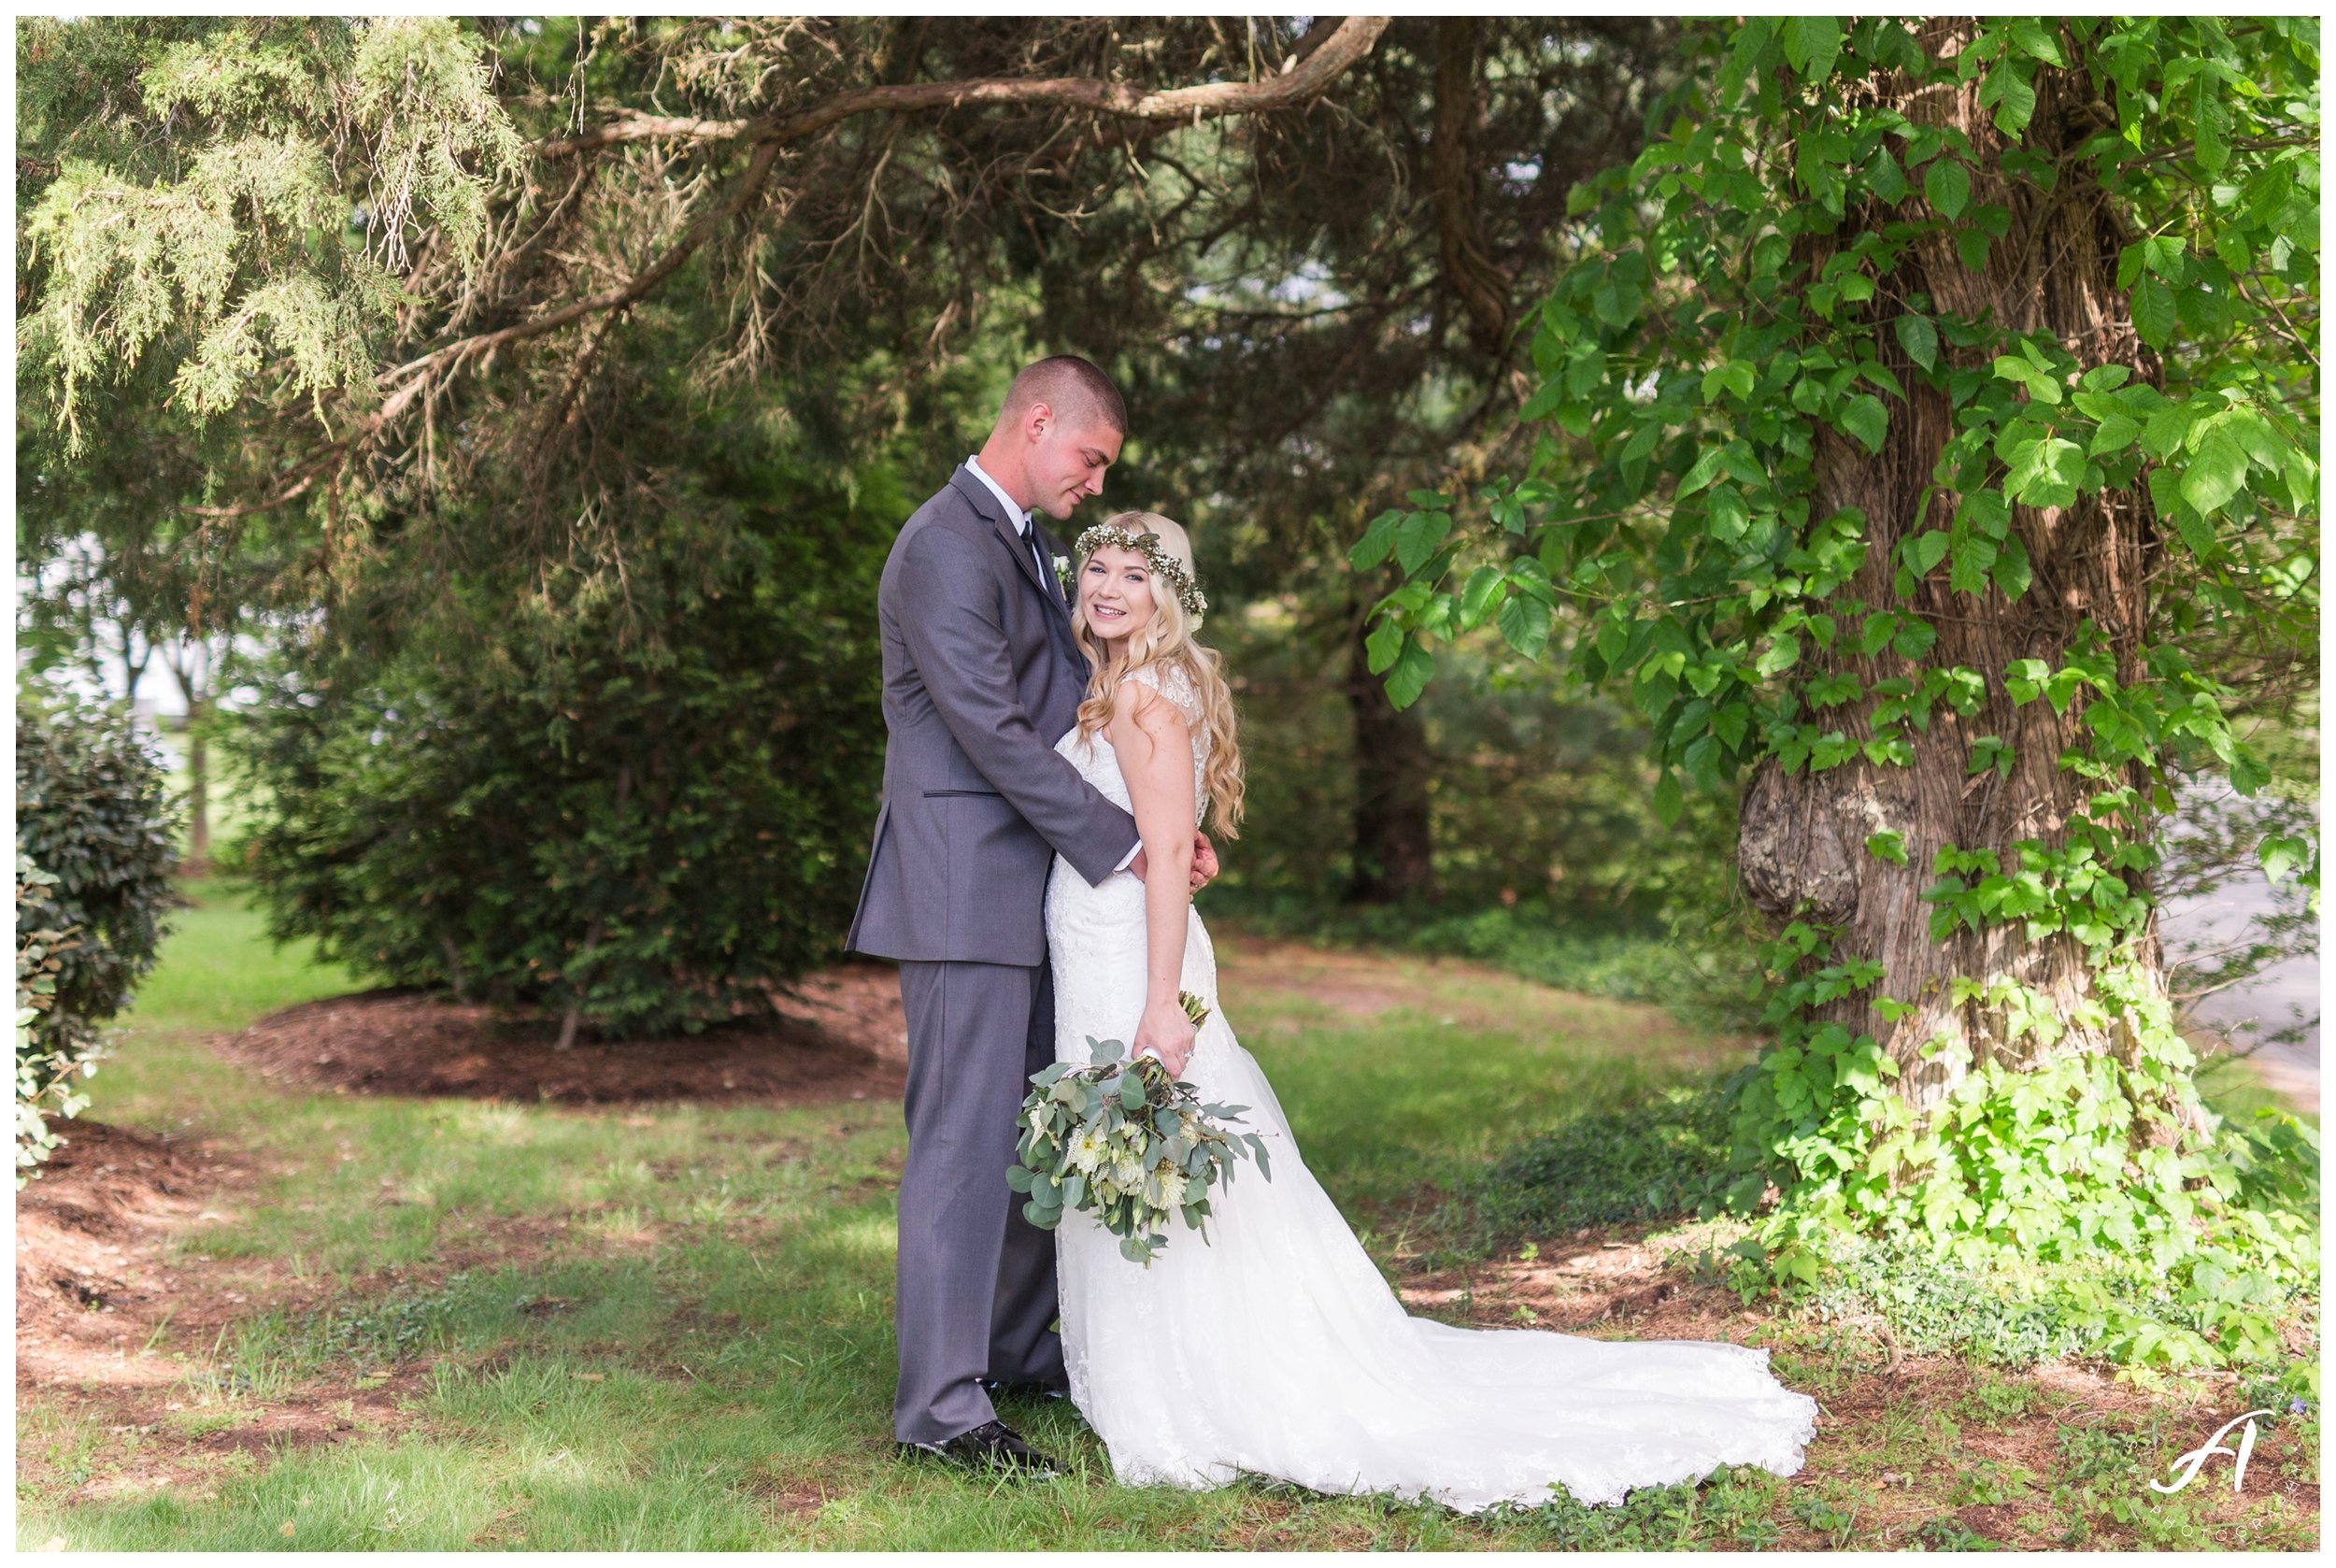 Garden Wedding at The Trivium Estate in Forest Virginia || Wedding Photographer in Charlottesville and Lynchburg VA || www.ashleyeiban.com